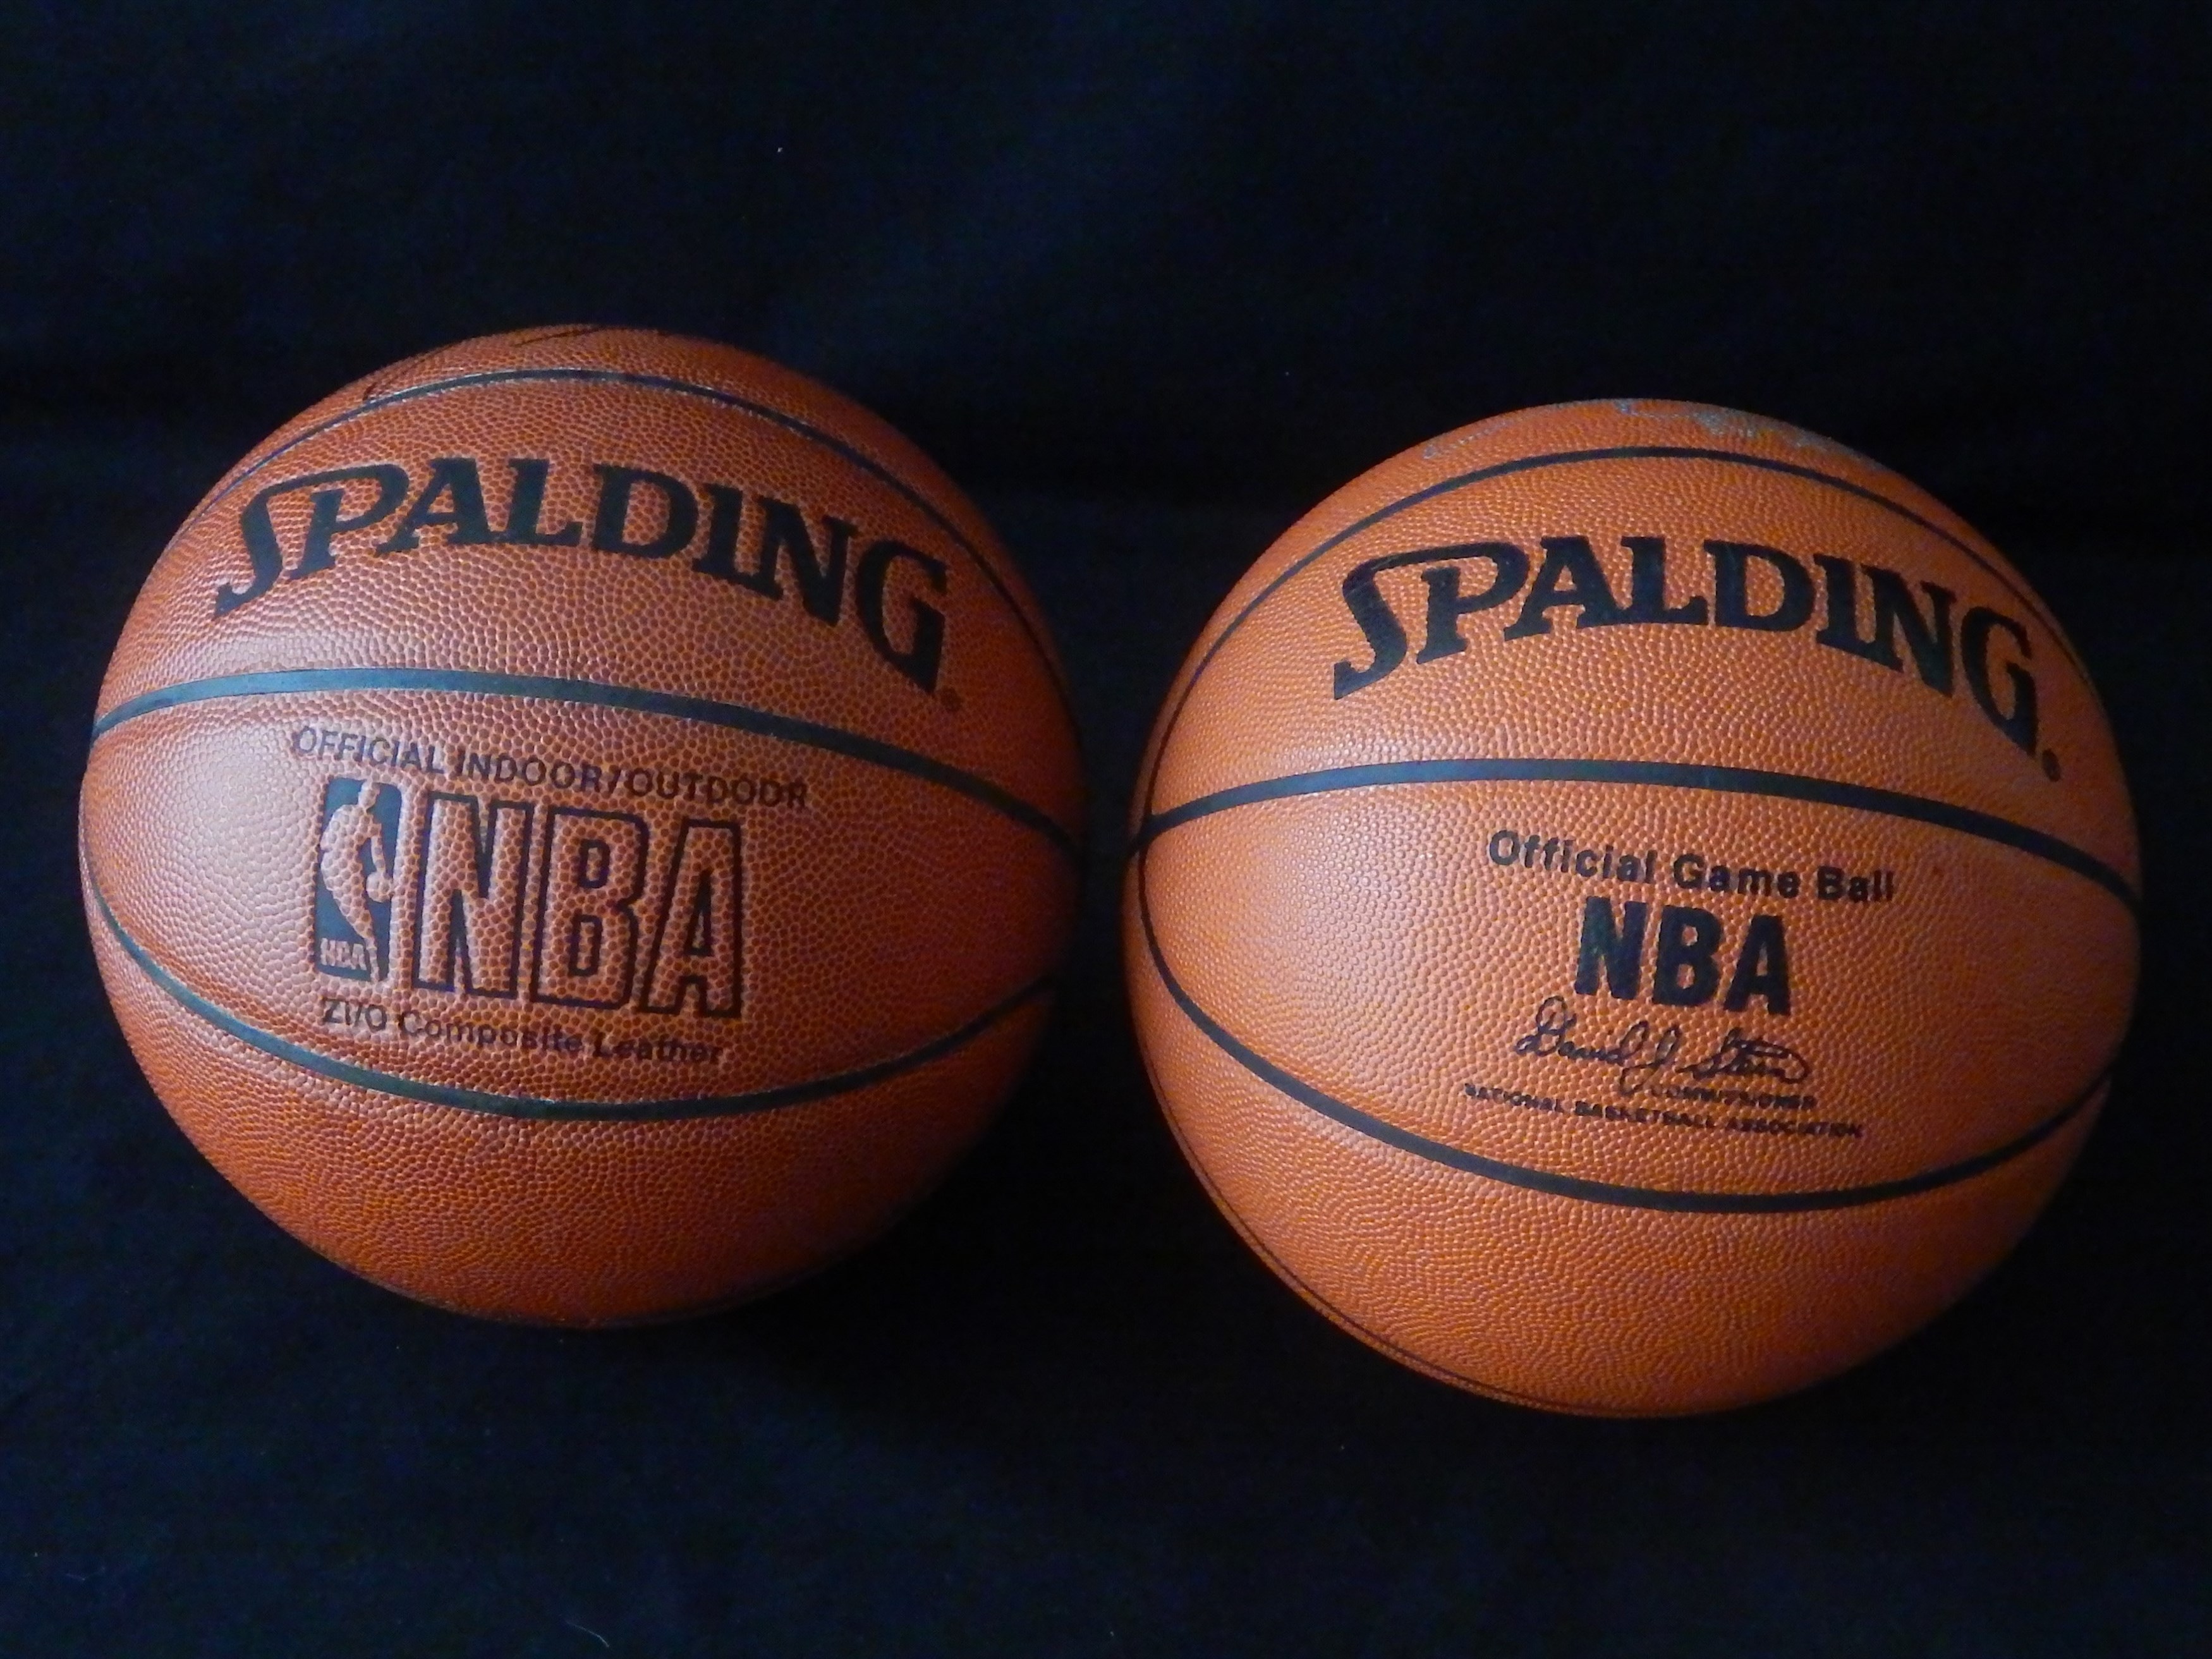 Basketball - John Stockton & Chris Webber Signed Basketballs (2)